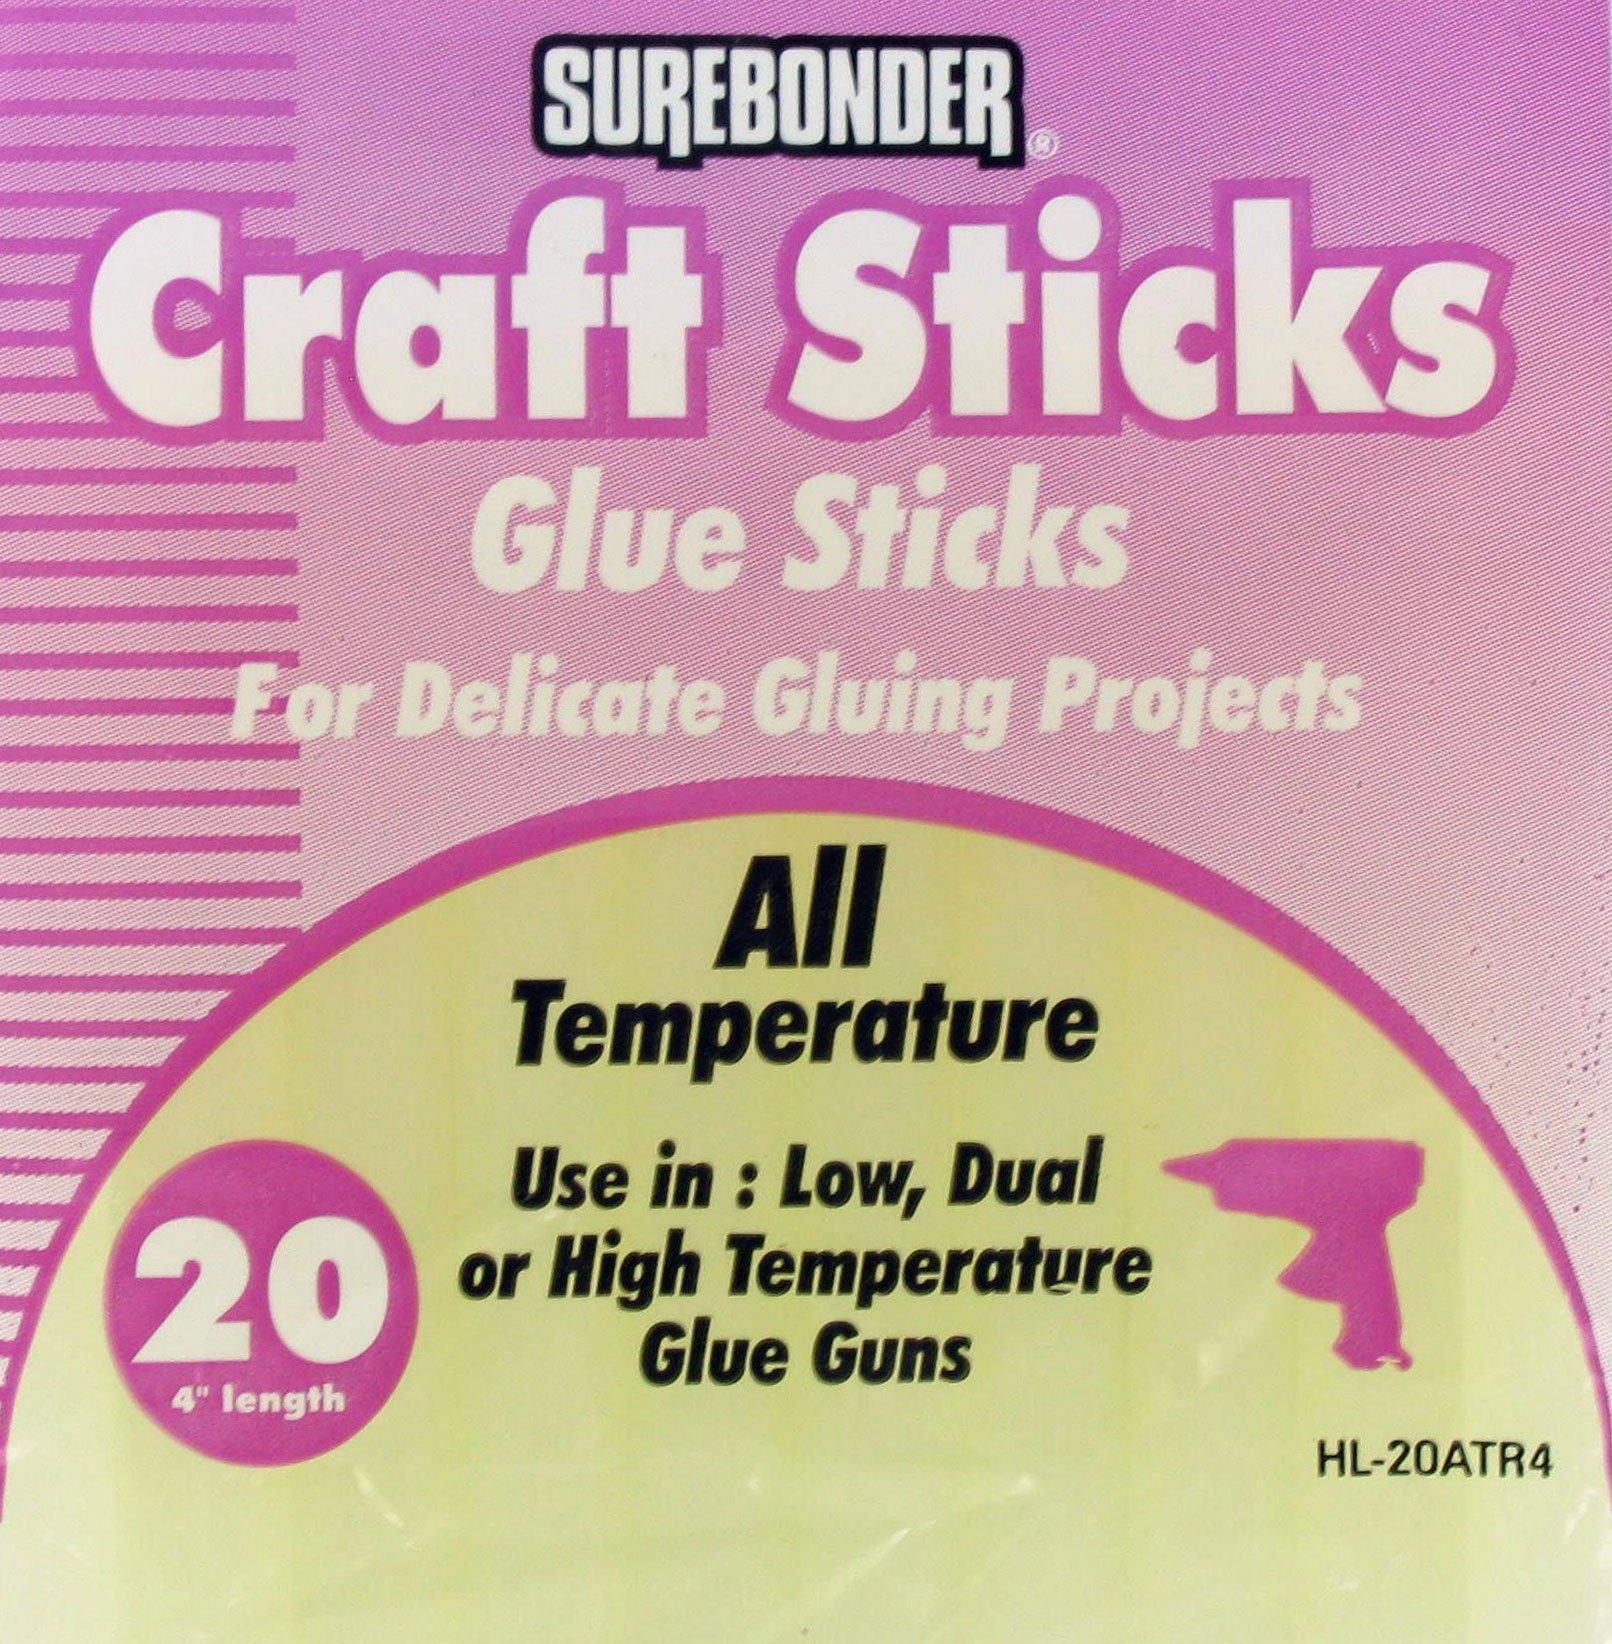 Hot Glue Sticks at